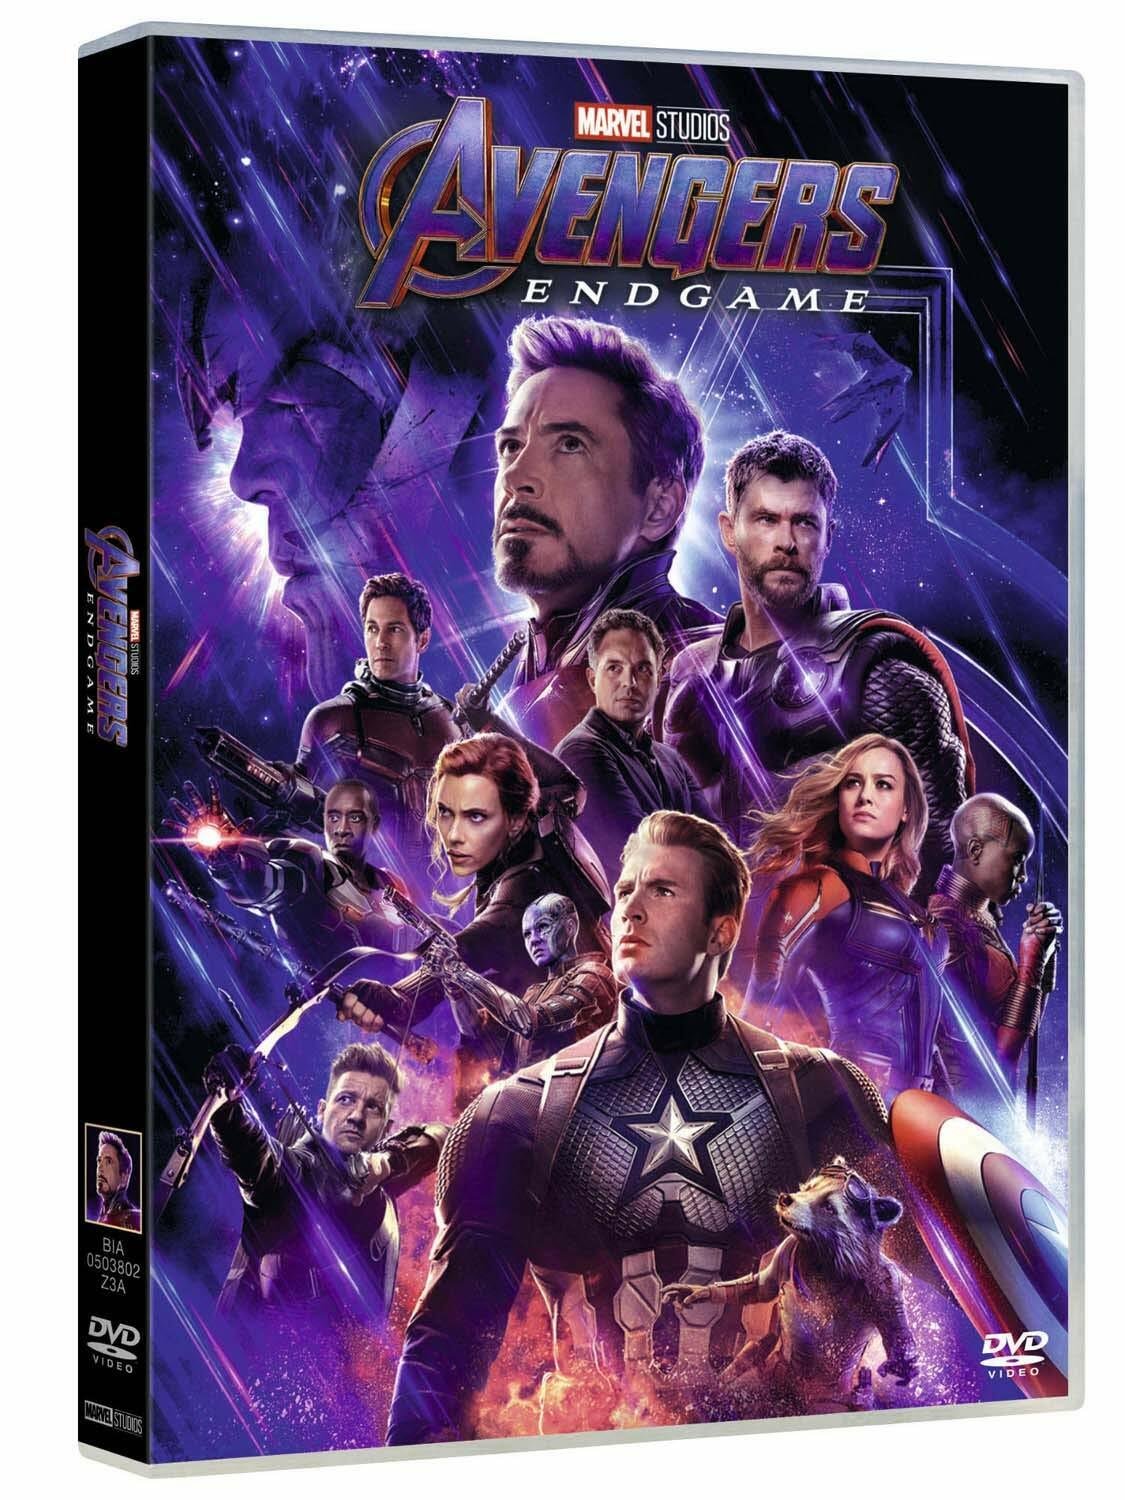 La cover dell'edizione DVD di Endgame